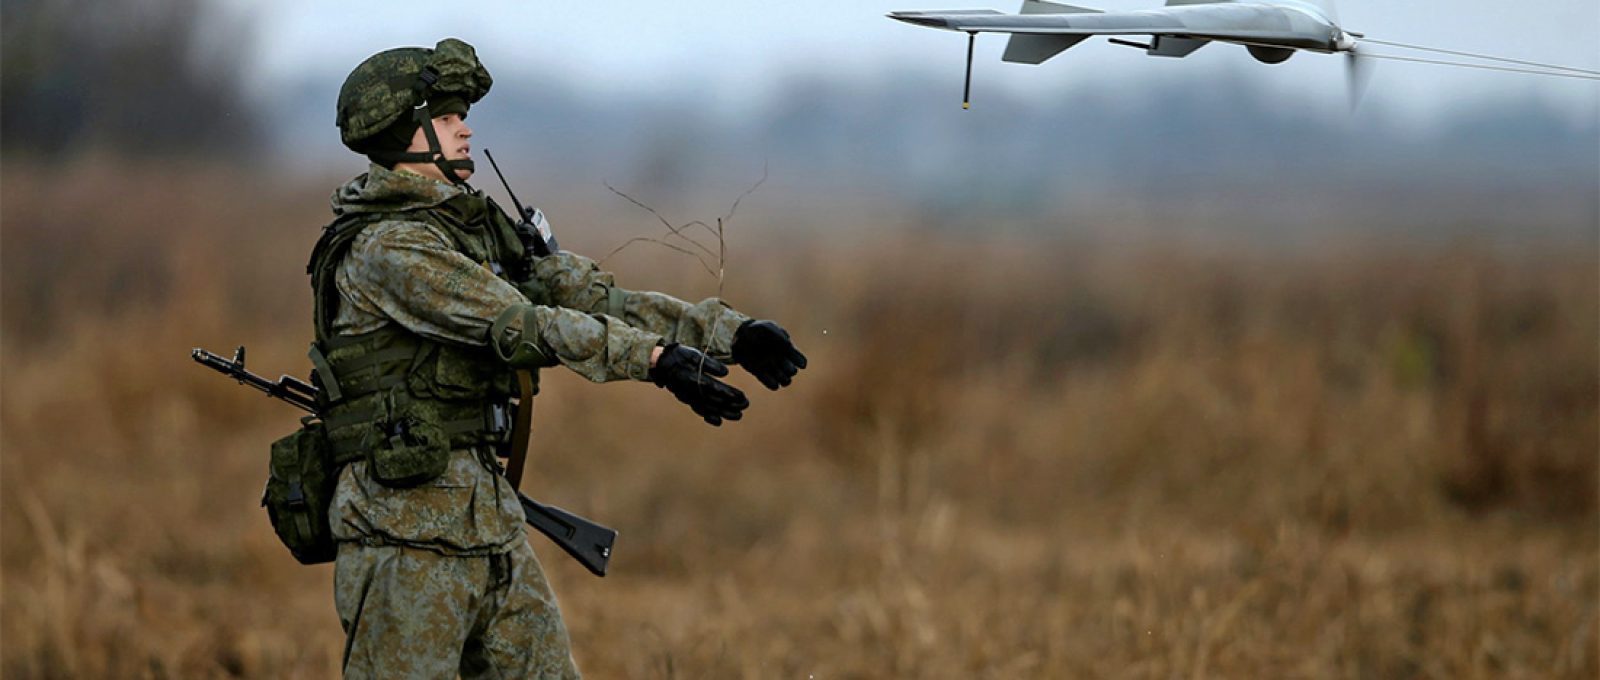 Soldado russo lança um drone durante o exercício de treinamento militar conjunto sérvio-russo “Irmandade Eslava” na cidade de Kovin, perto de Belgrado, Sérvia, em 7 de novembro de 2016 (Marko Djurica/Reuters).